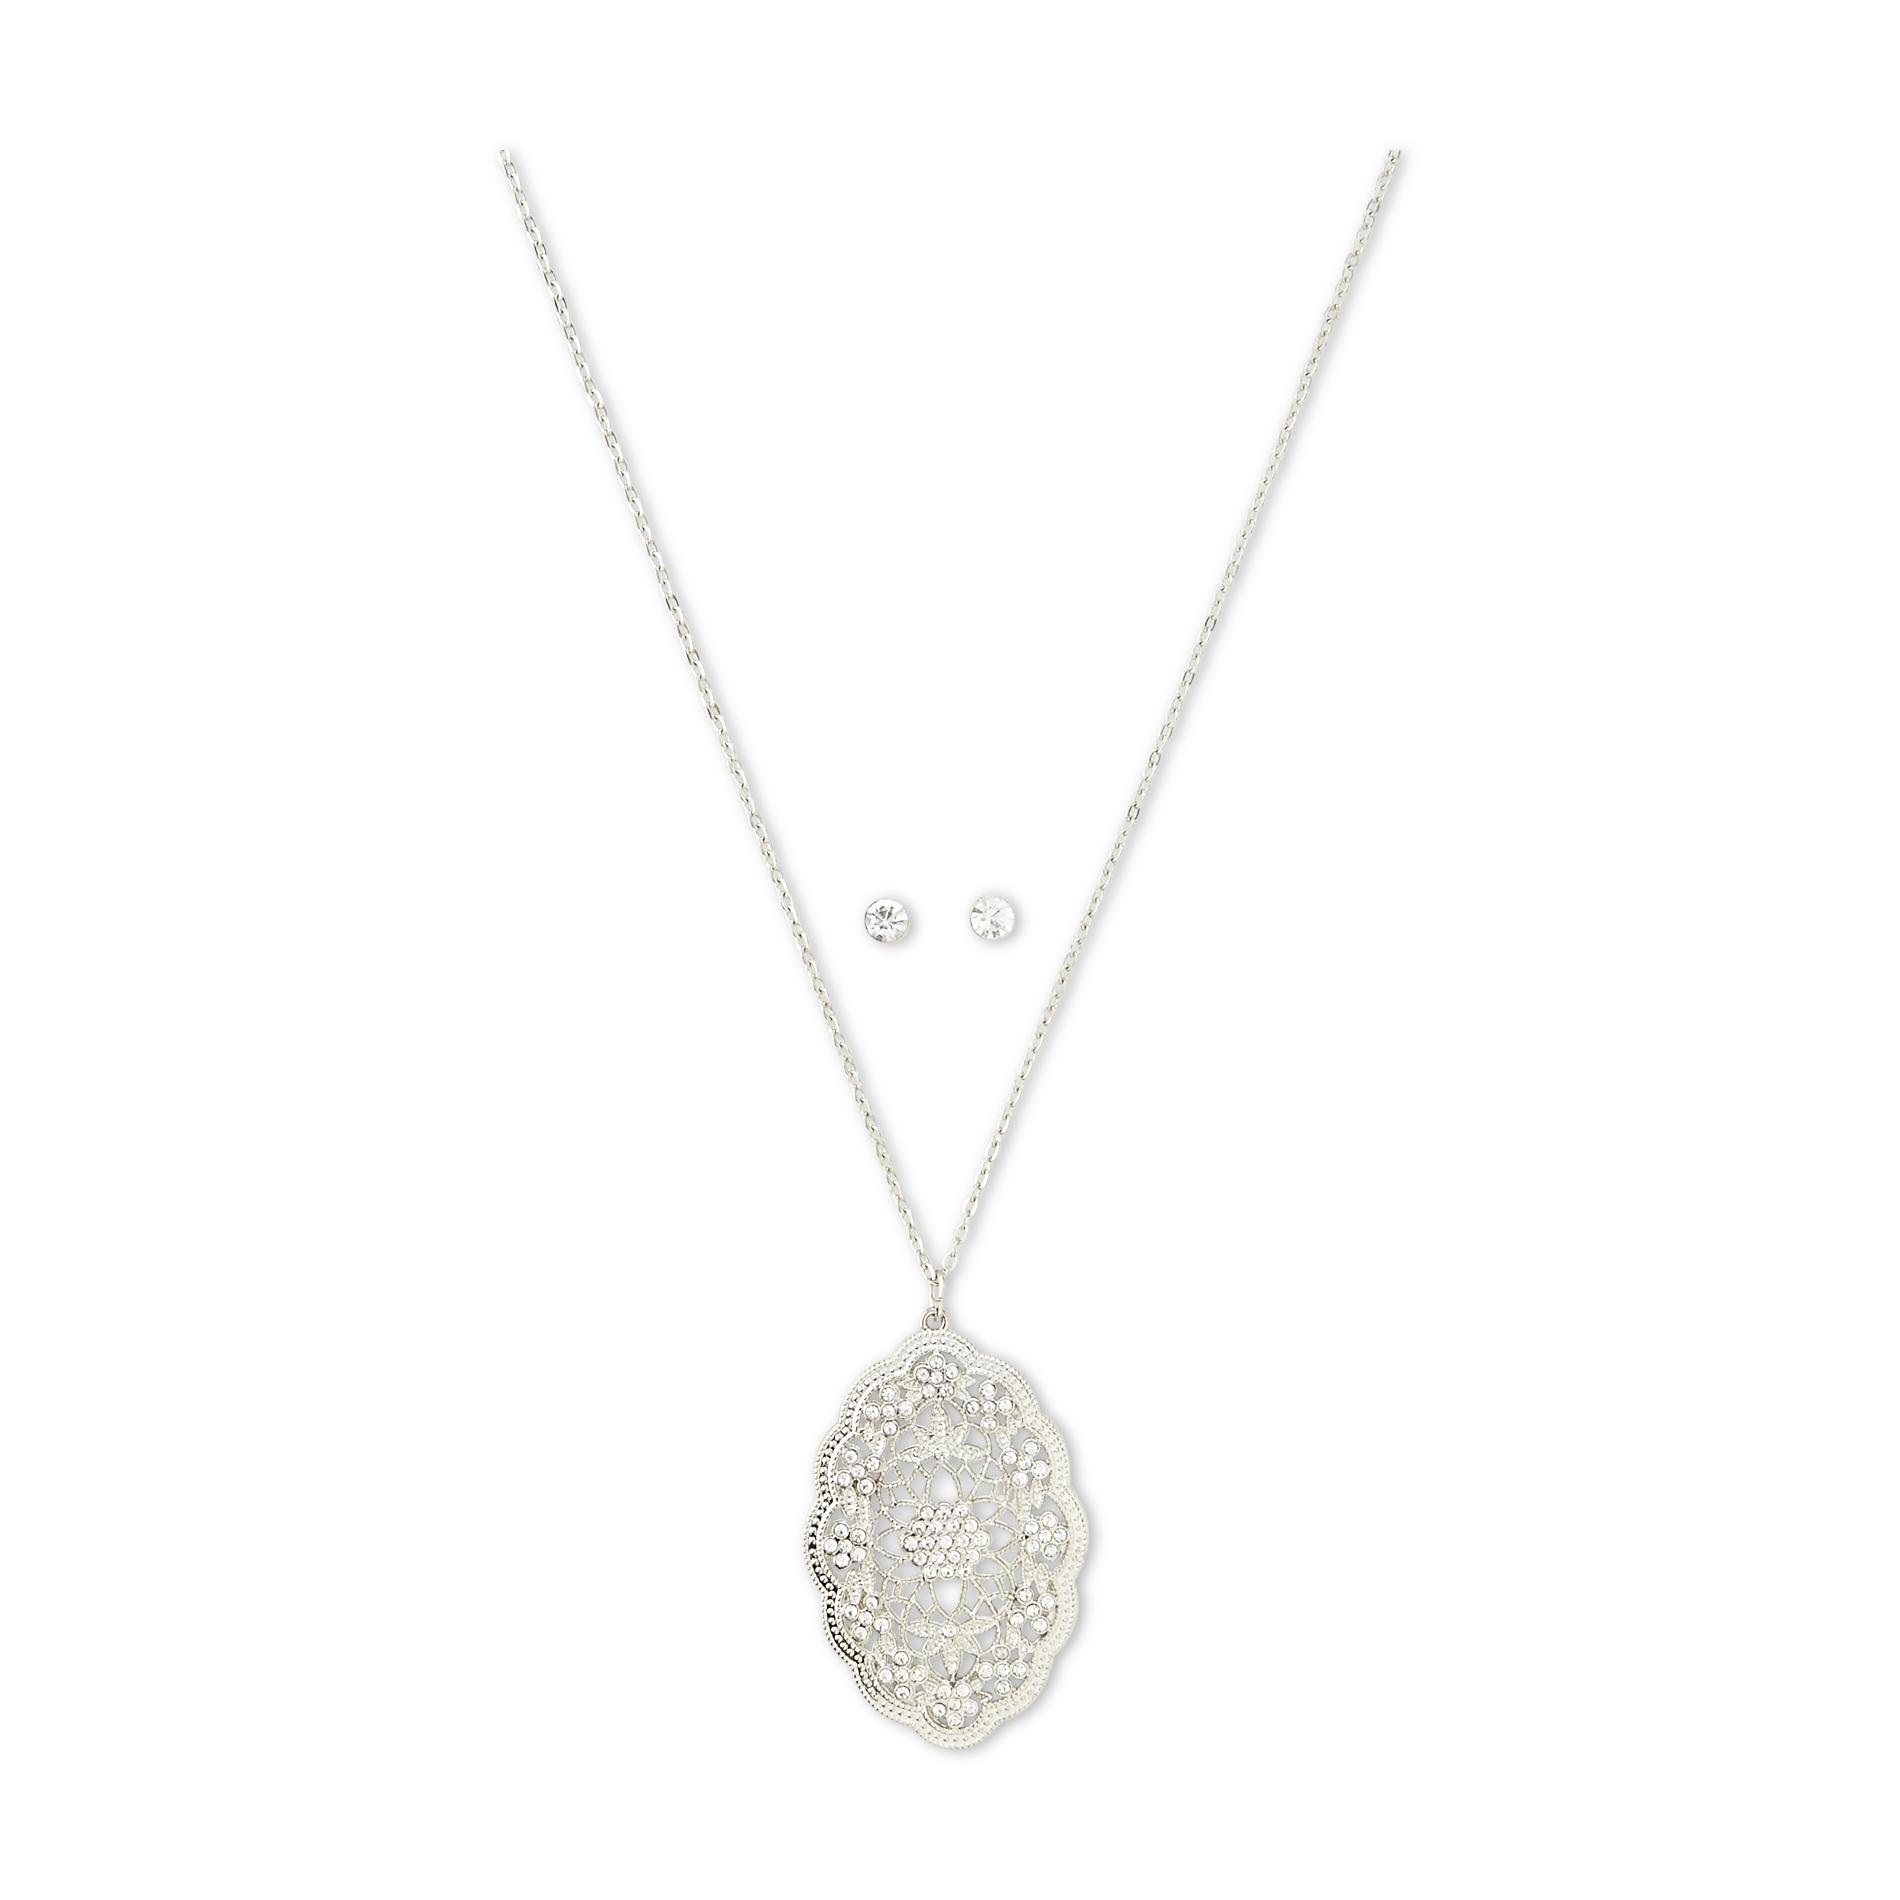 Jaclyn Smith Women's Silvertone Pendant Necklace  Earrings & Gift Box